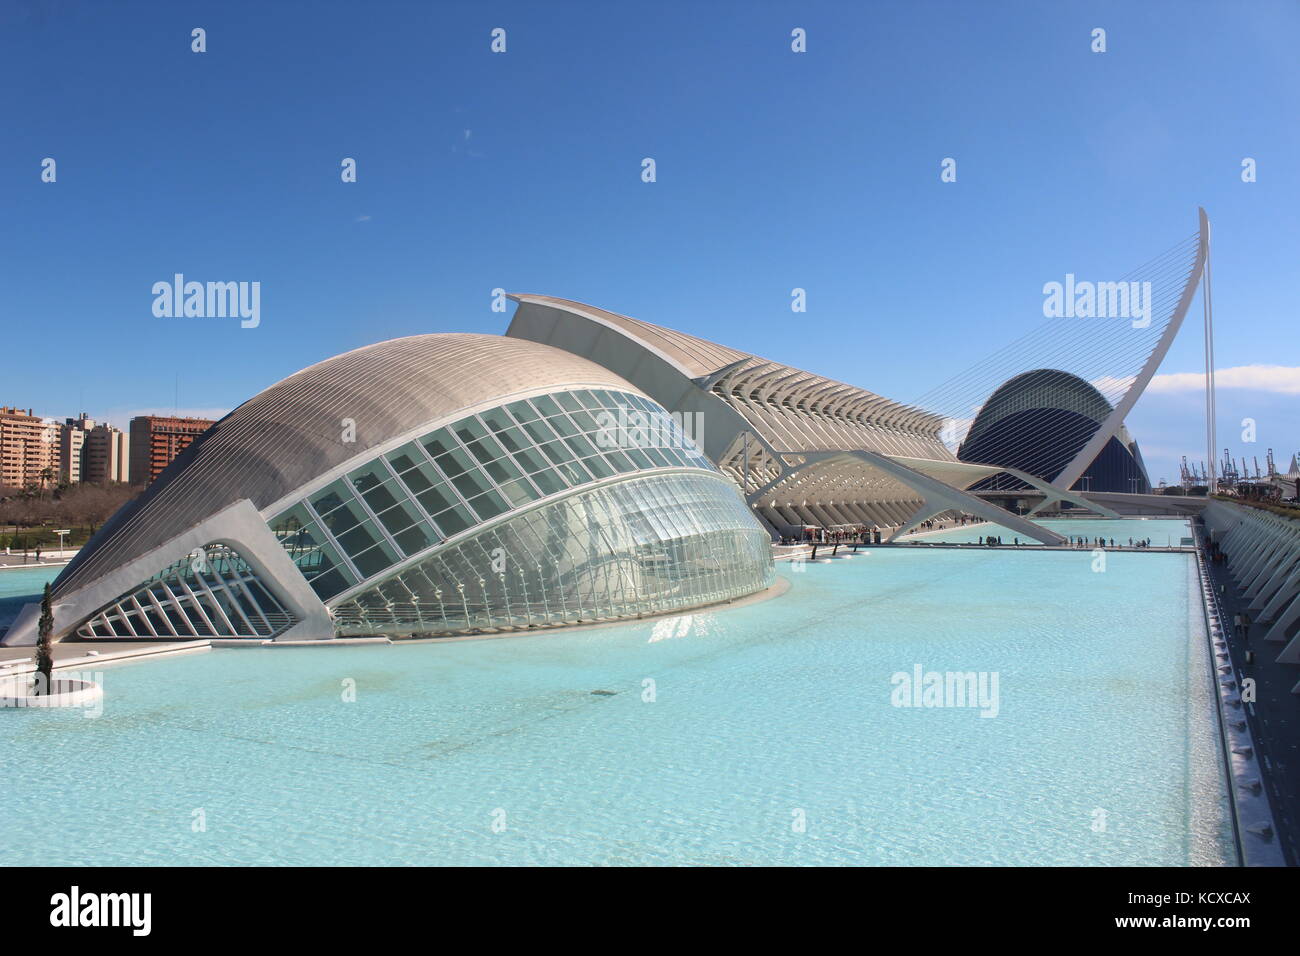 Ciudad de las Artes y las Ciencias. The Science Park in Valencia, Designed by Calatrava. Stock Photo